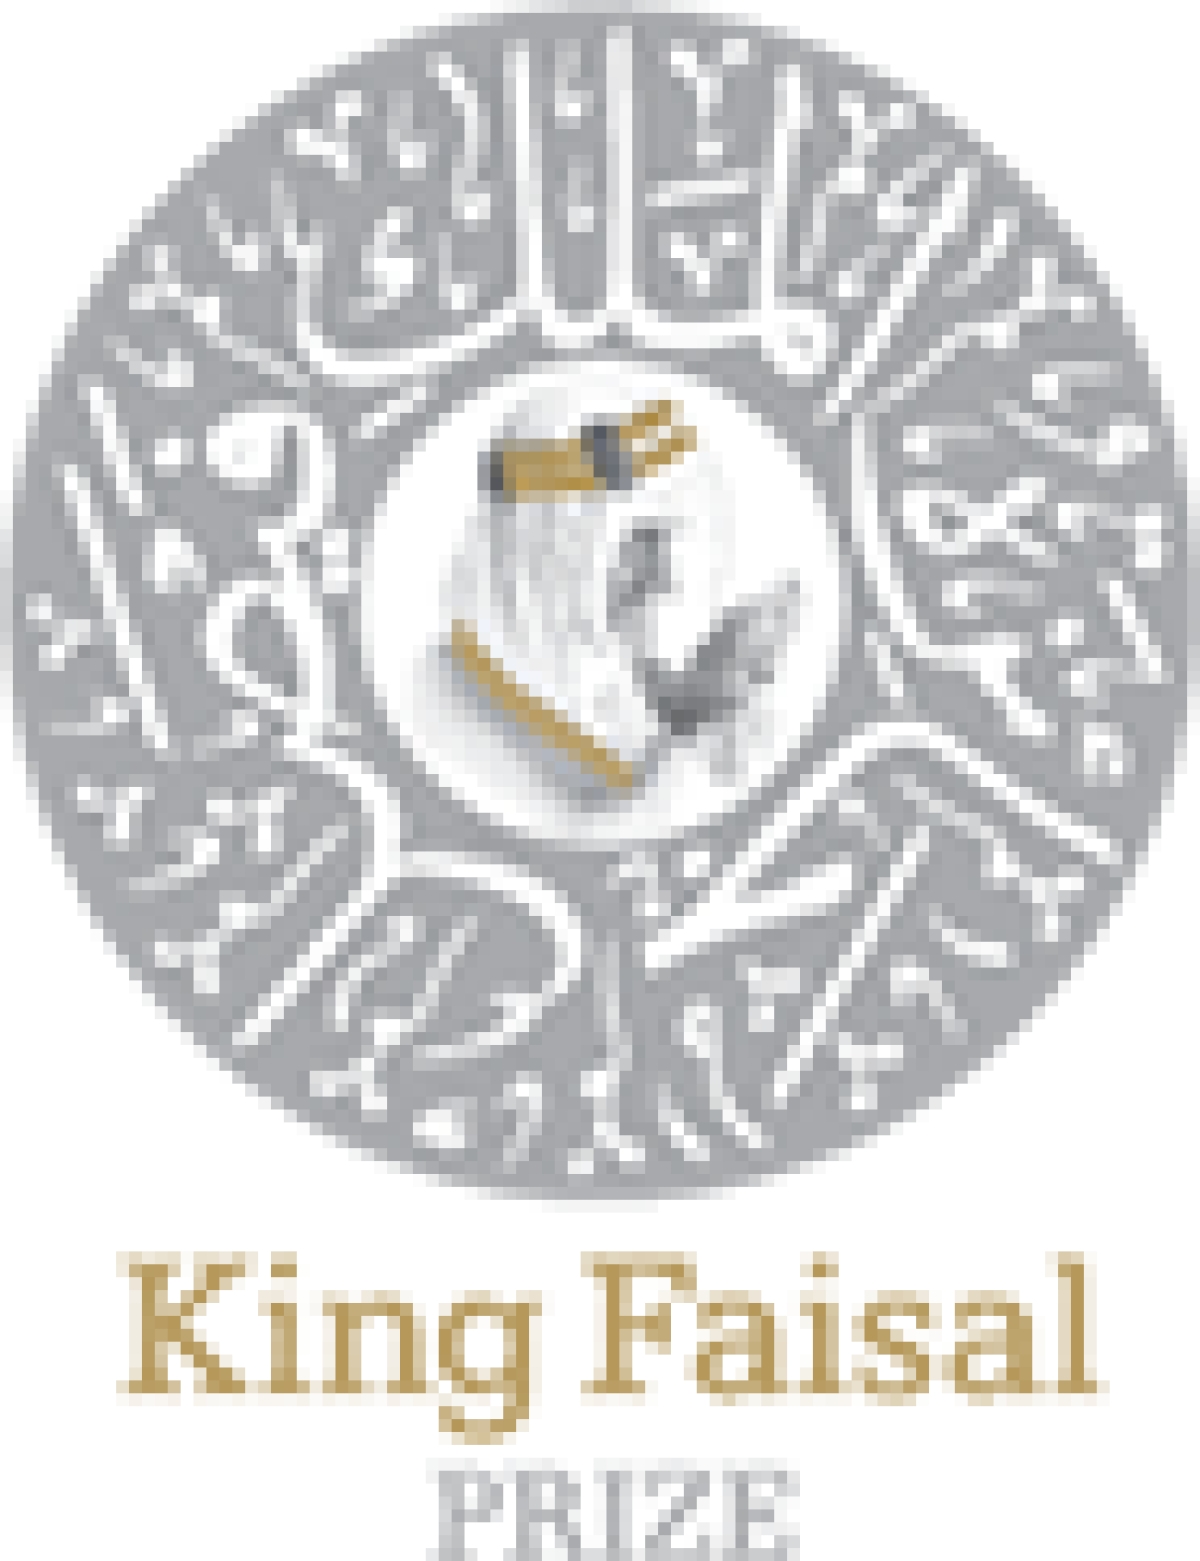 الاعلان عن جائزة الملك فيصل للغة العربية والآداب لعام 1444 هـ / 2022 م